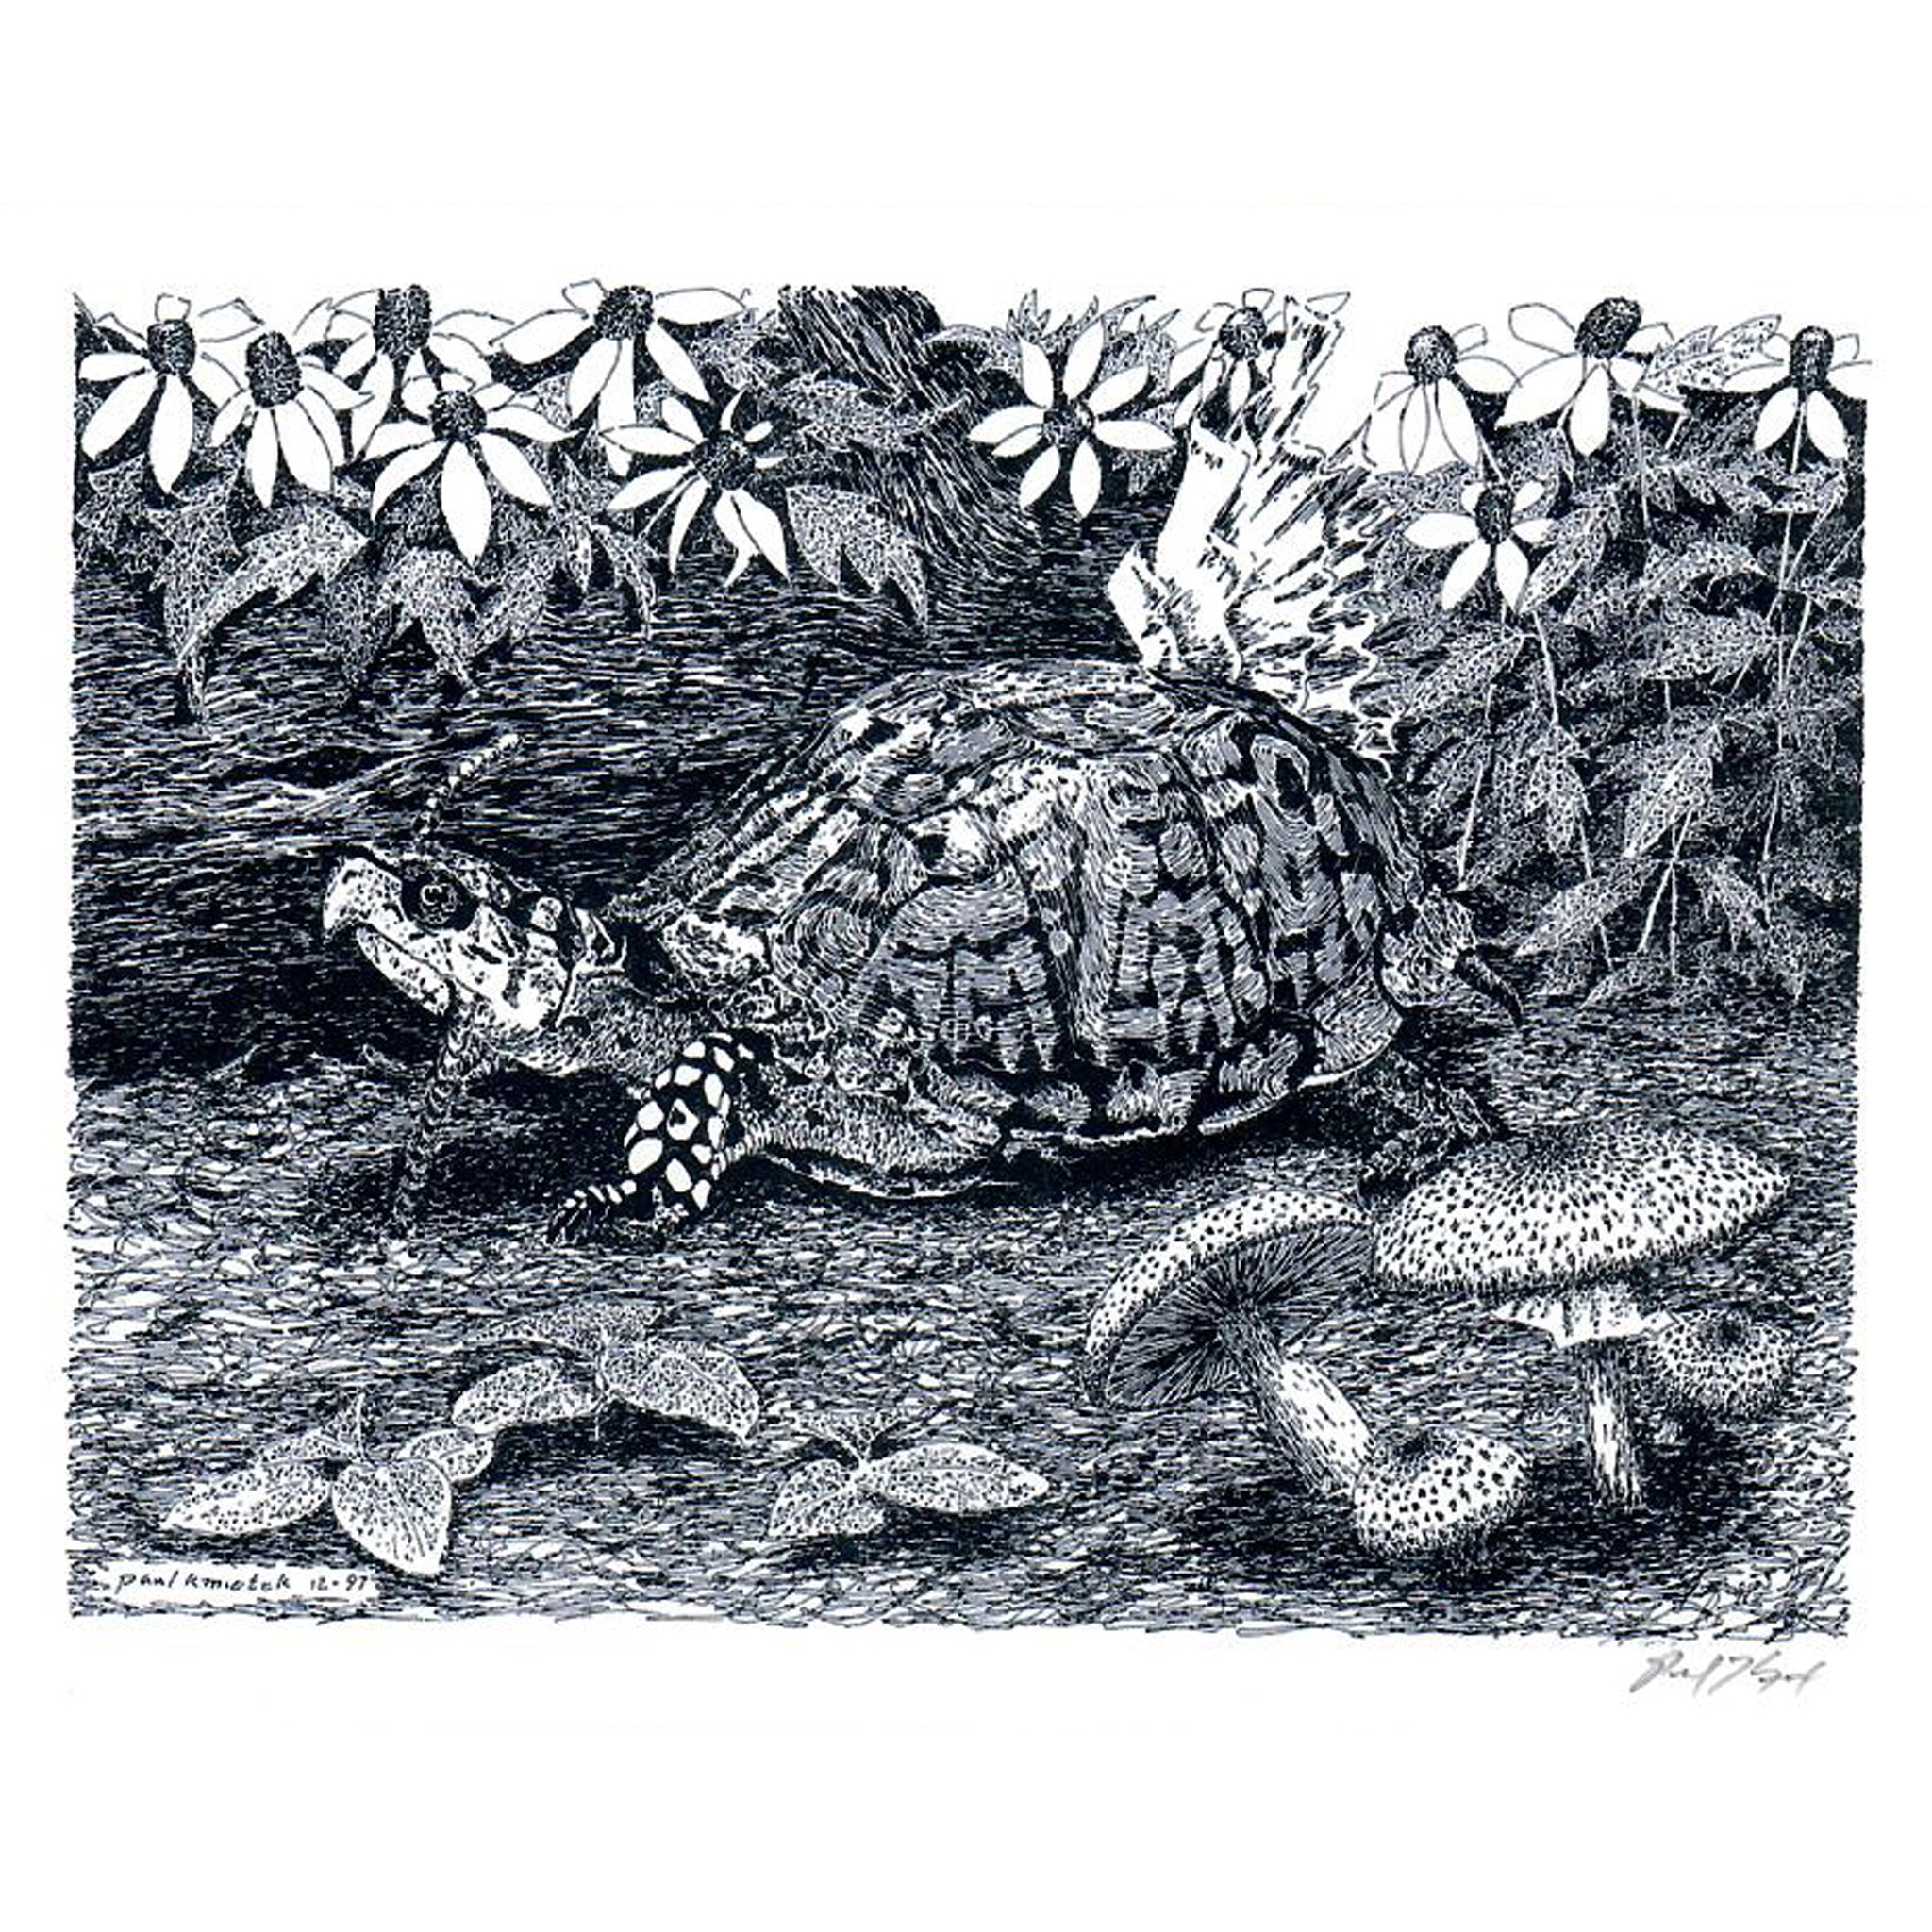 Eastern Box Turtle Notecard, Pen and Ink Artwork by Paul Kmiotek